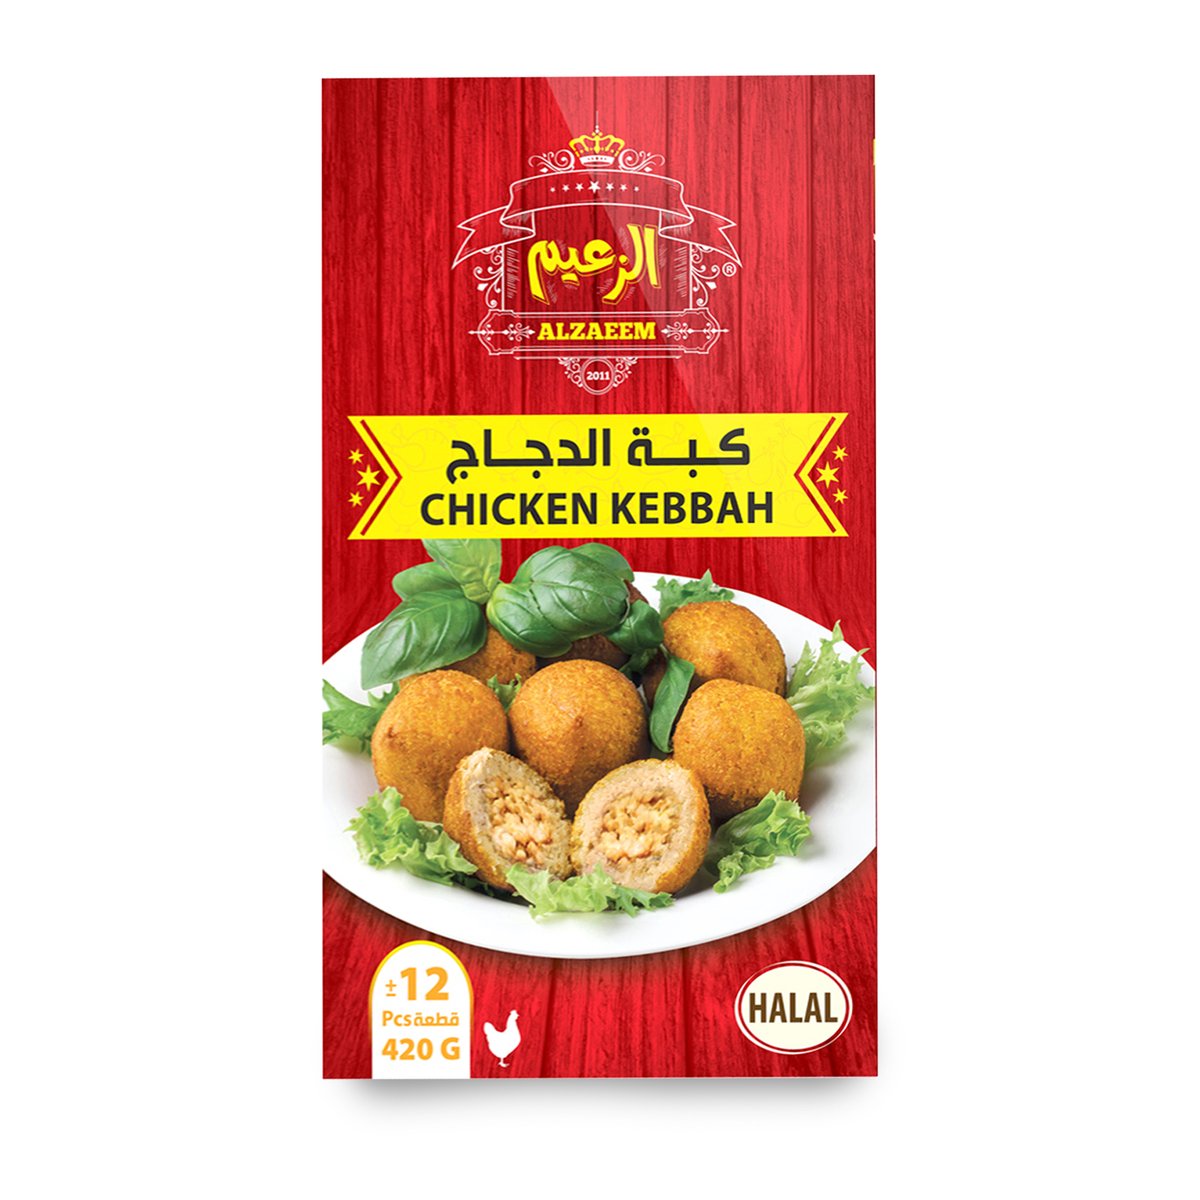 Al Zaeem Chicken Kebbah 12pcs 420g